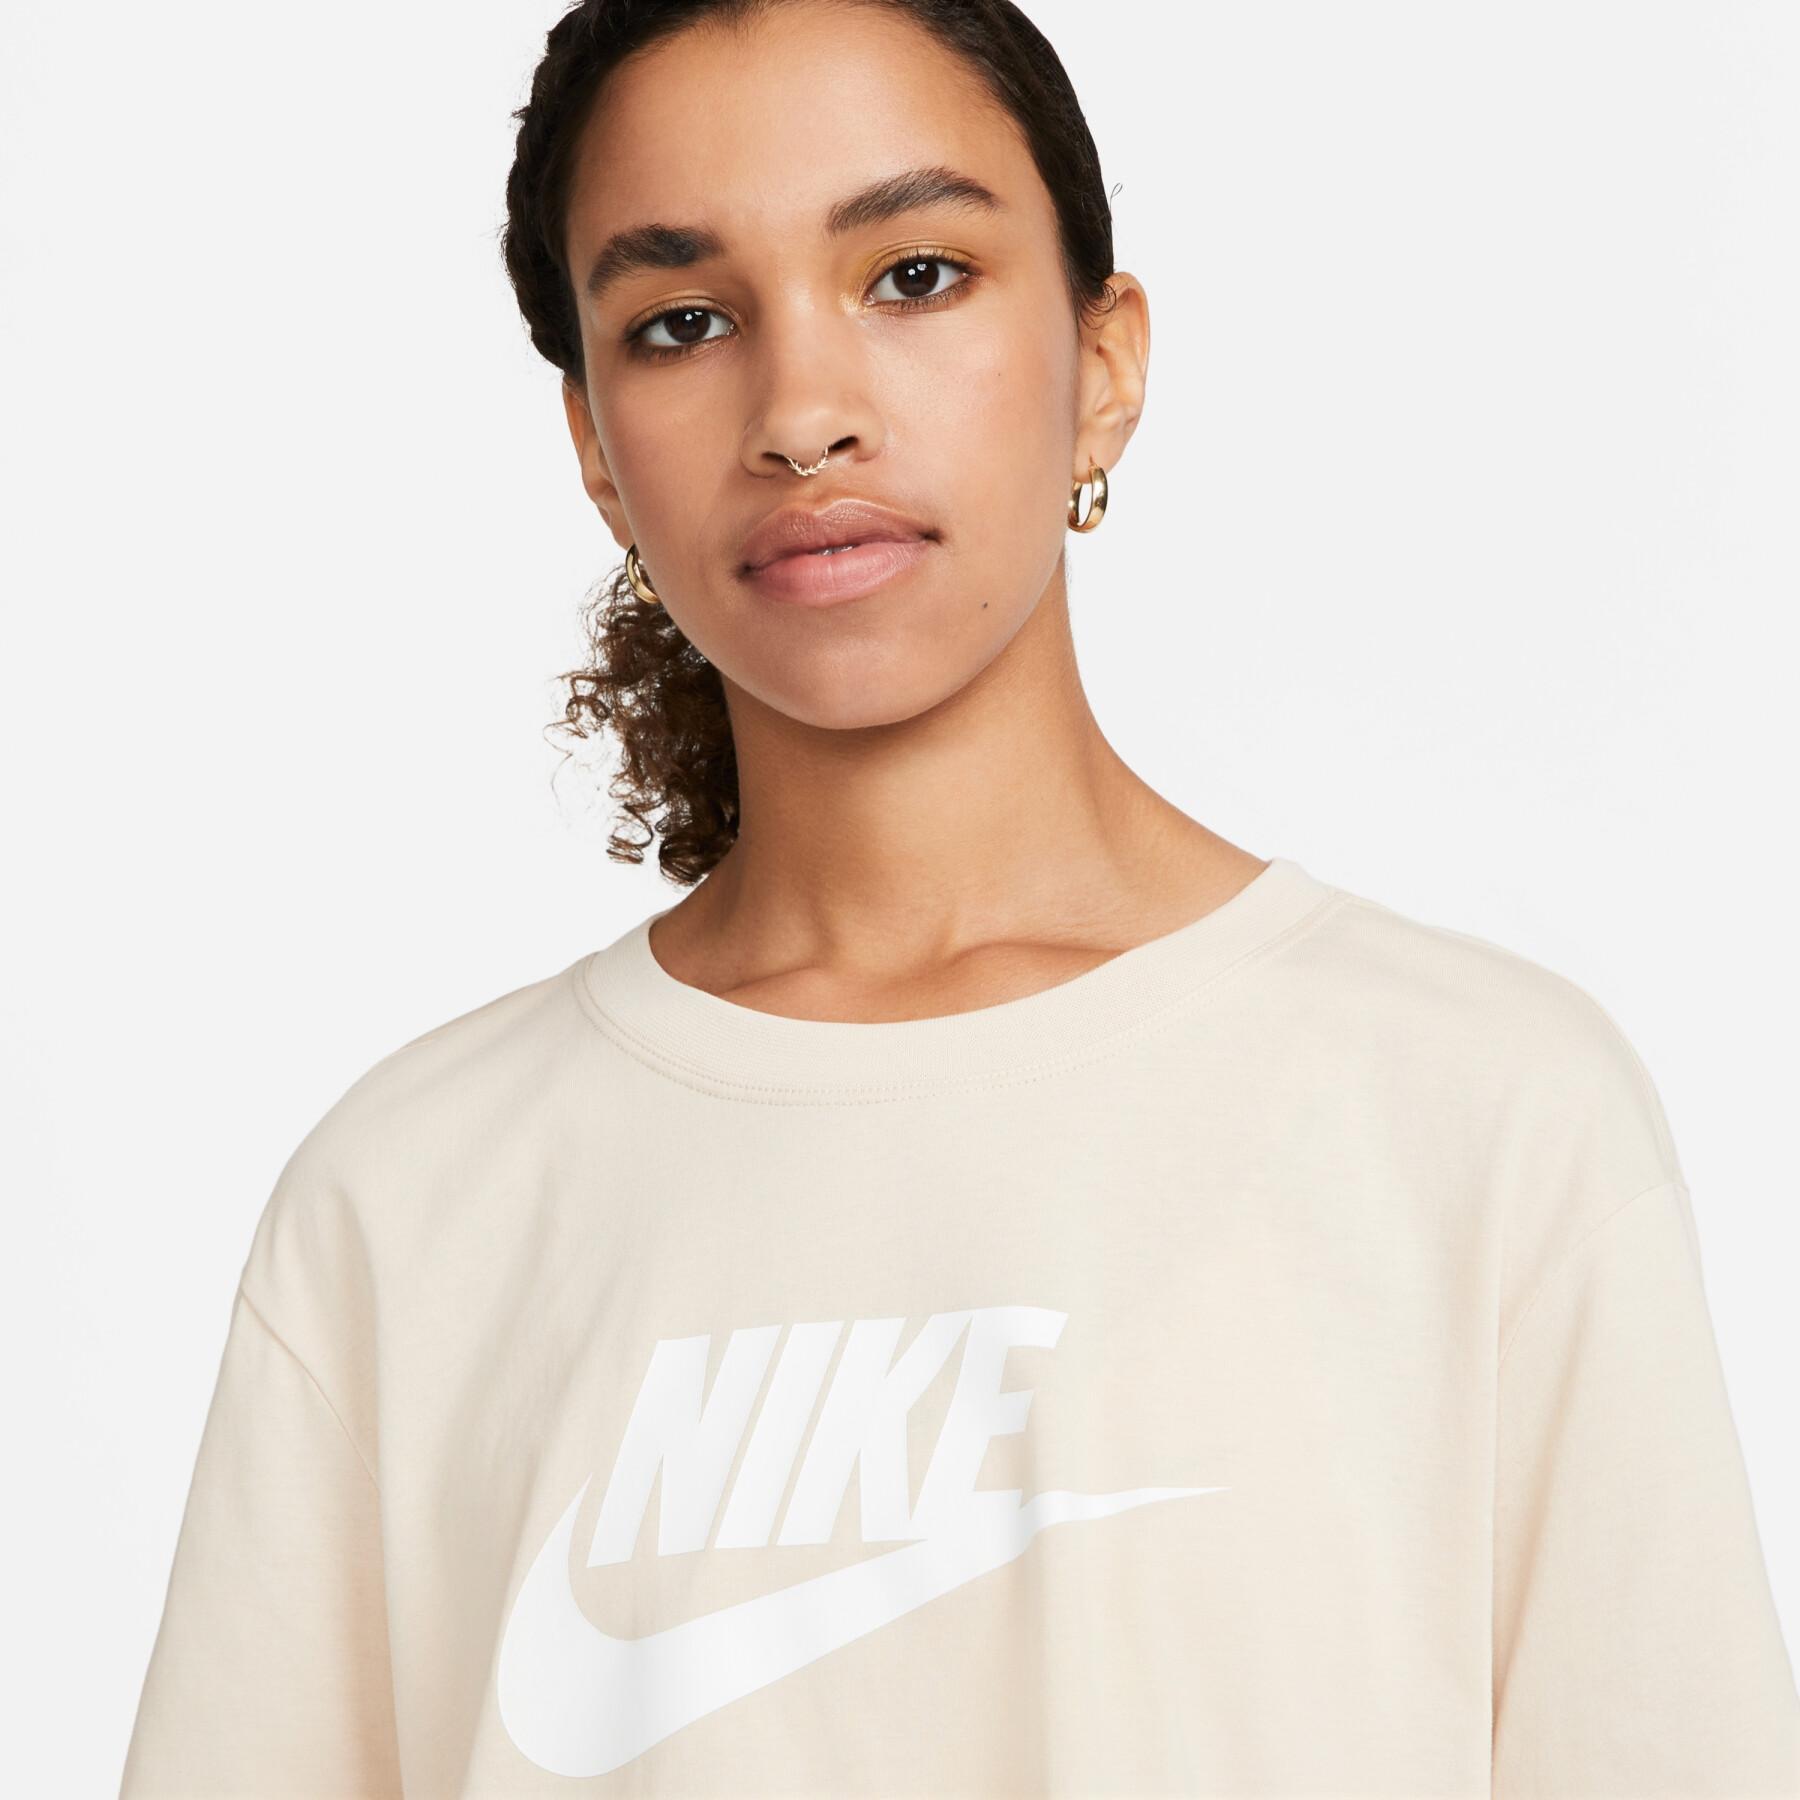 Maglietta da donna Nike Essential